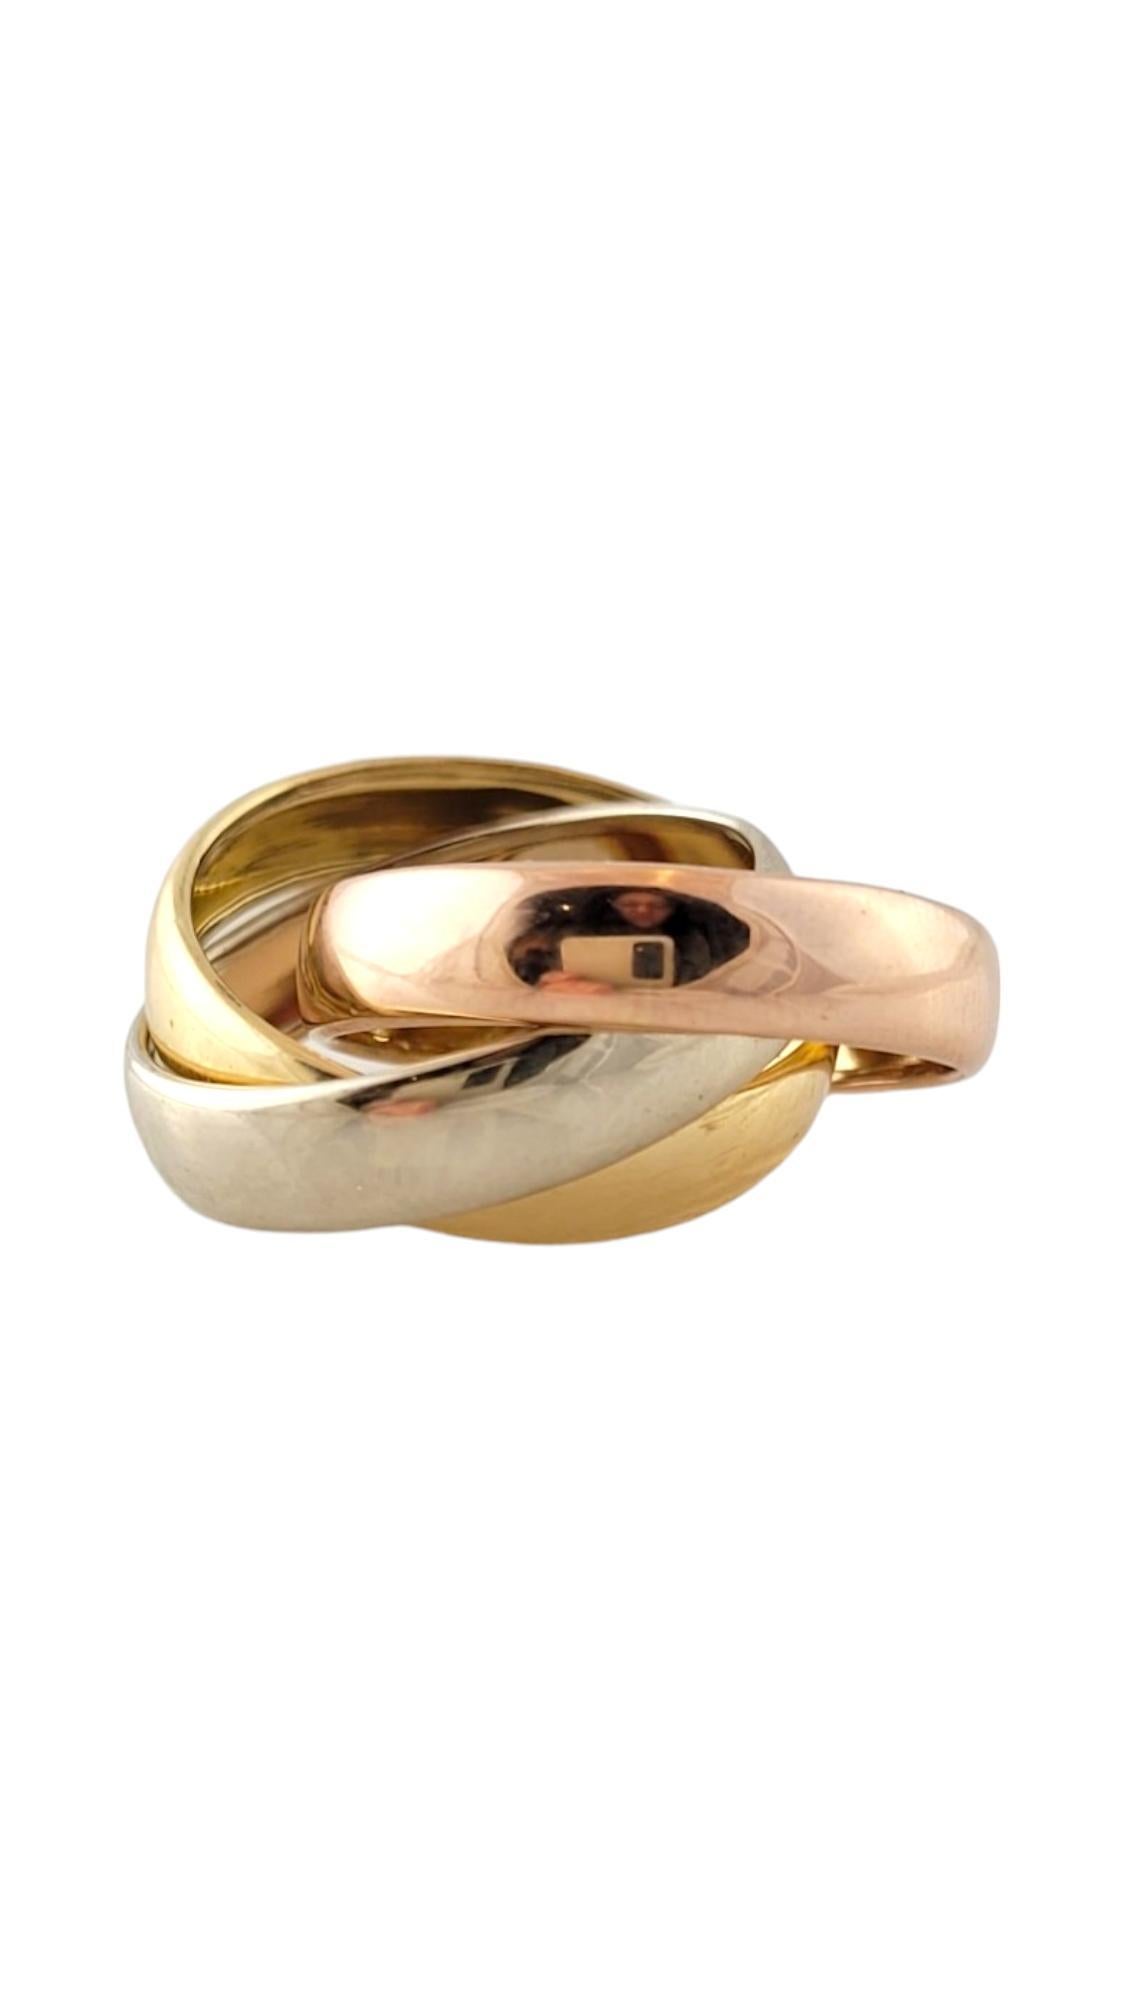 18K Tri Colored Rolling 3 Band Ring Größe 8

Dieser wunderschöne Ring mit 3 Bändern ist aus 18 Karat Gelb-, Rosé- und Weißgold gefertigt und hat ein wunderschönes Finish!

Ringgröße: 8
Schaft: 4,9 mm (jedes Band)

Gewicht: 3,83 dwt/ 5,95 g

Punze: